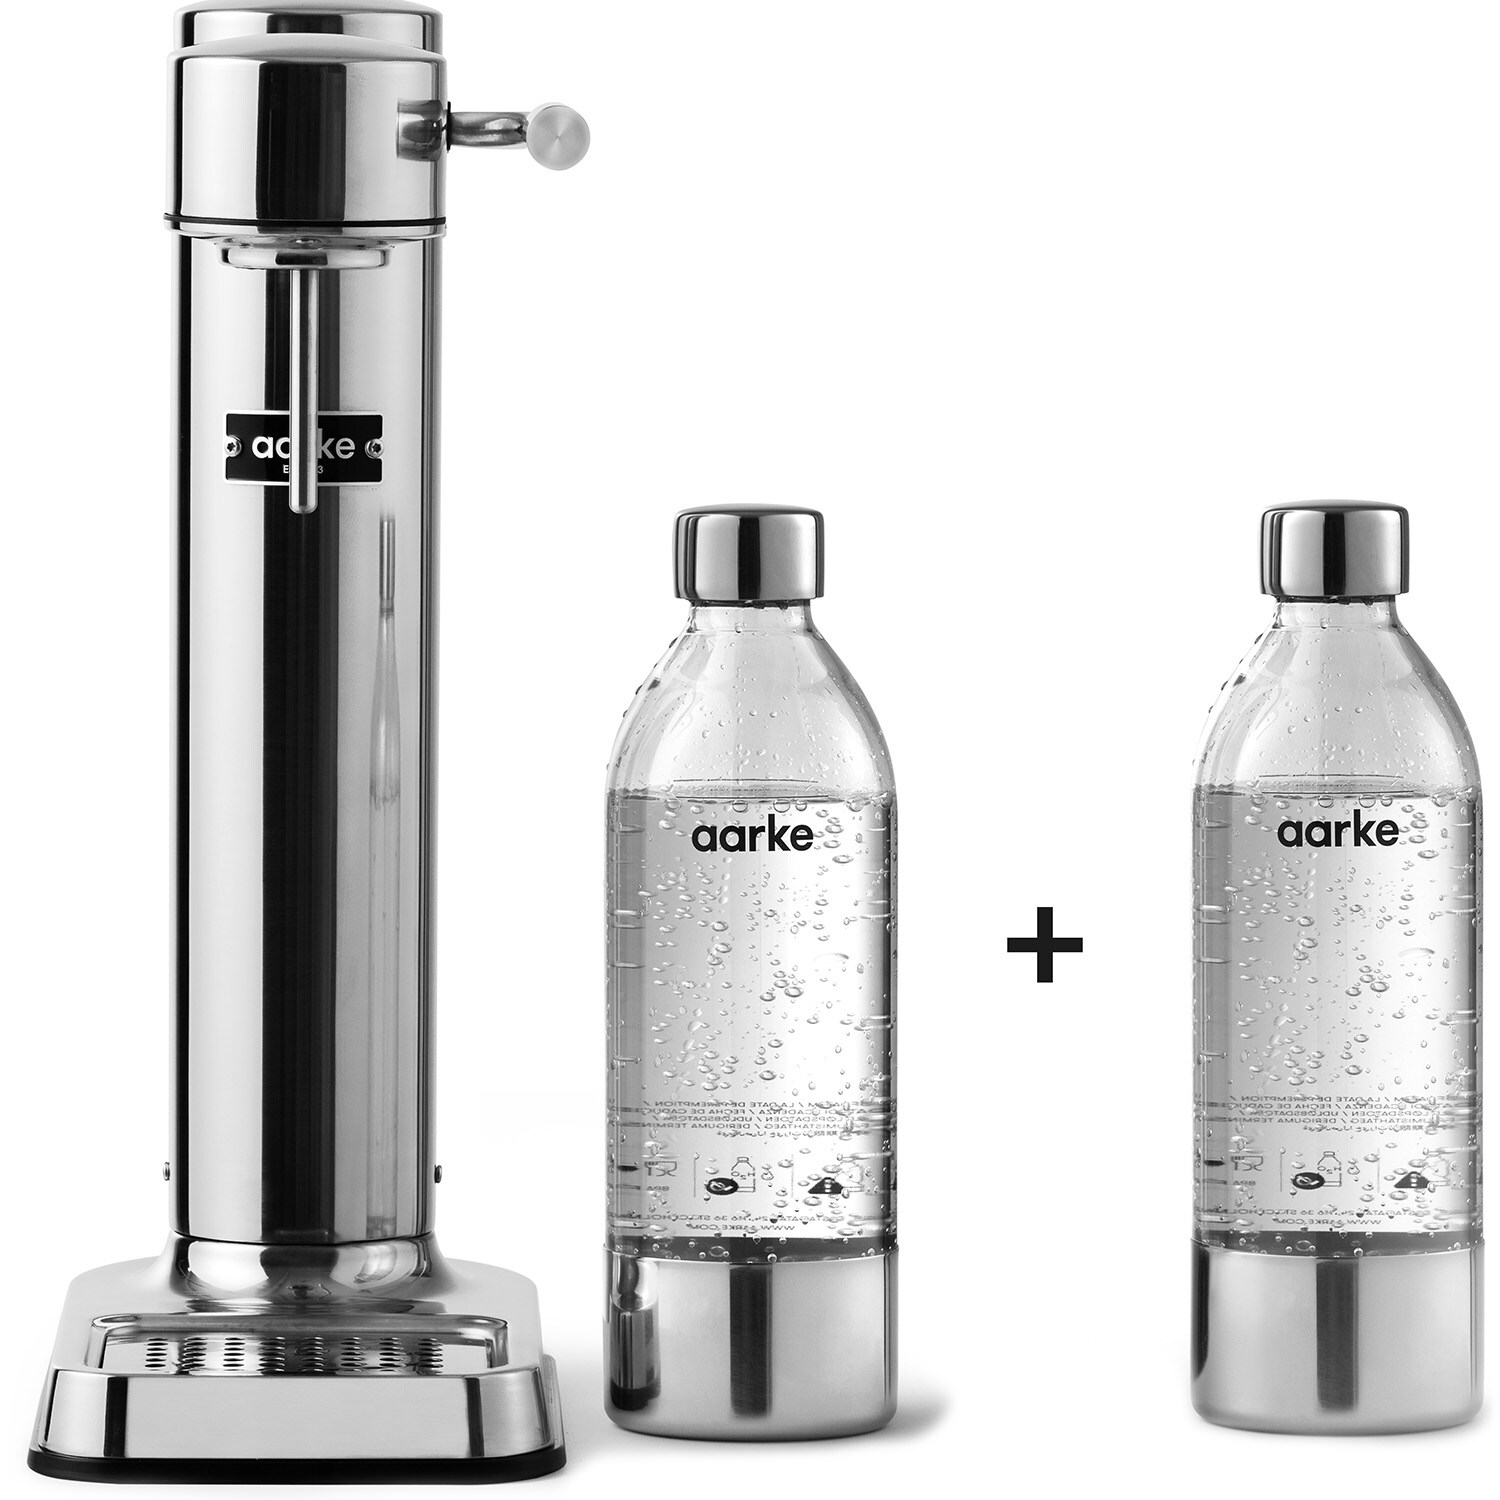 Aarke Carbonator Iii Kolsyremaskin + 2 Pet-flaskor Polished Steel - Övriga Köksmaskiner Plast Polerat stål